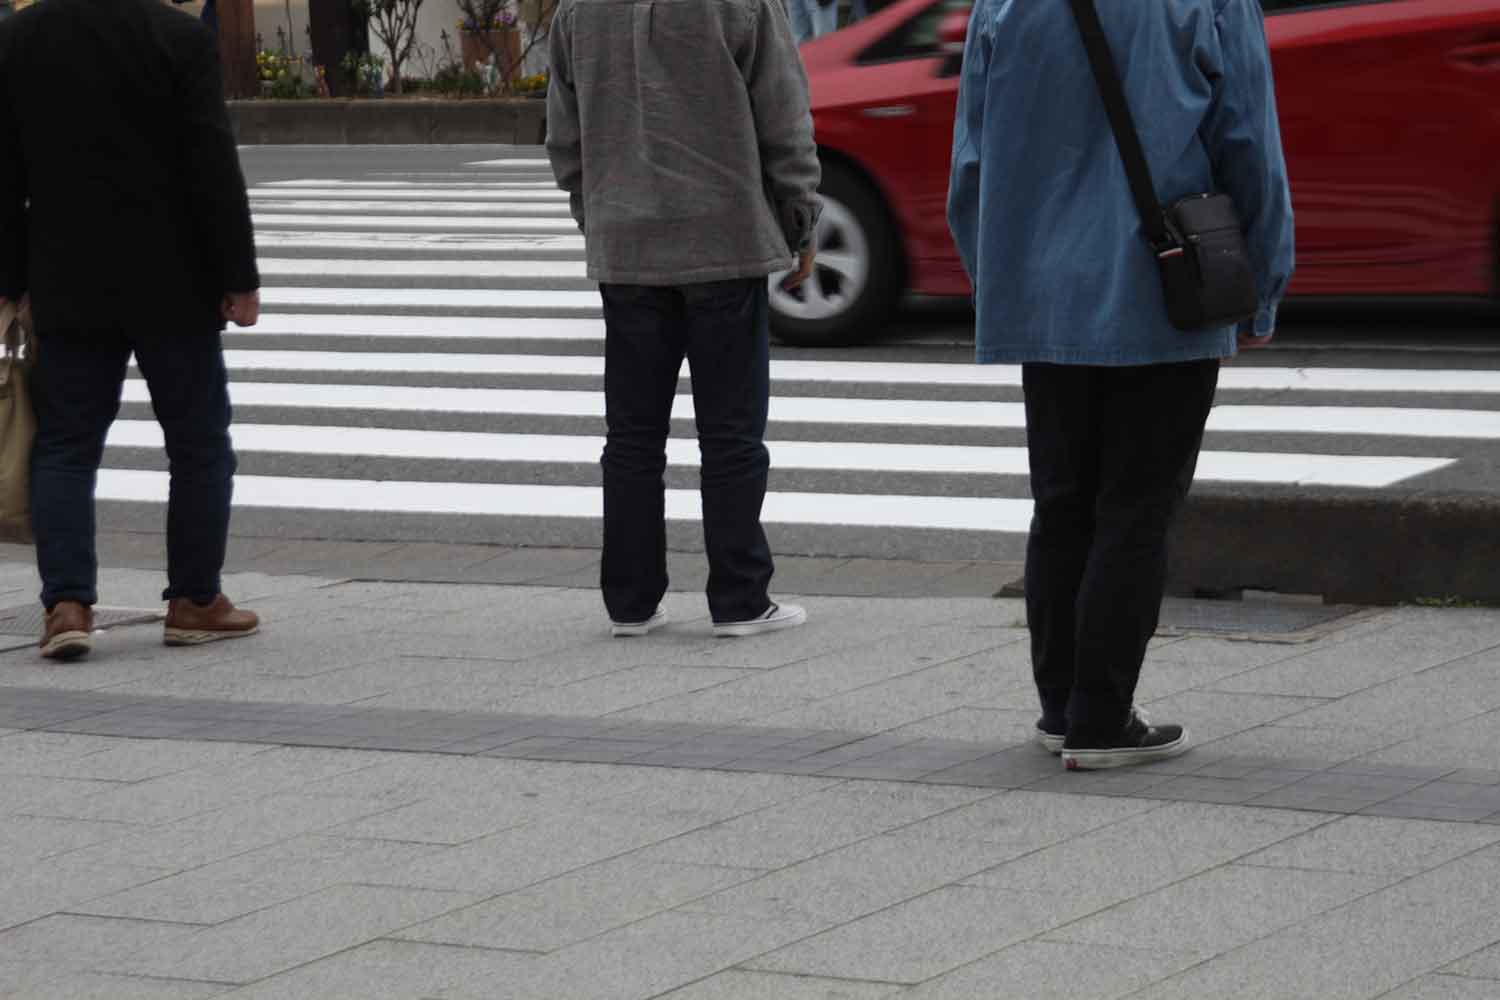 横断歩道で歩行者の横断を妨げたらそれだけで交通違反だ